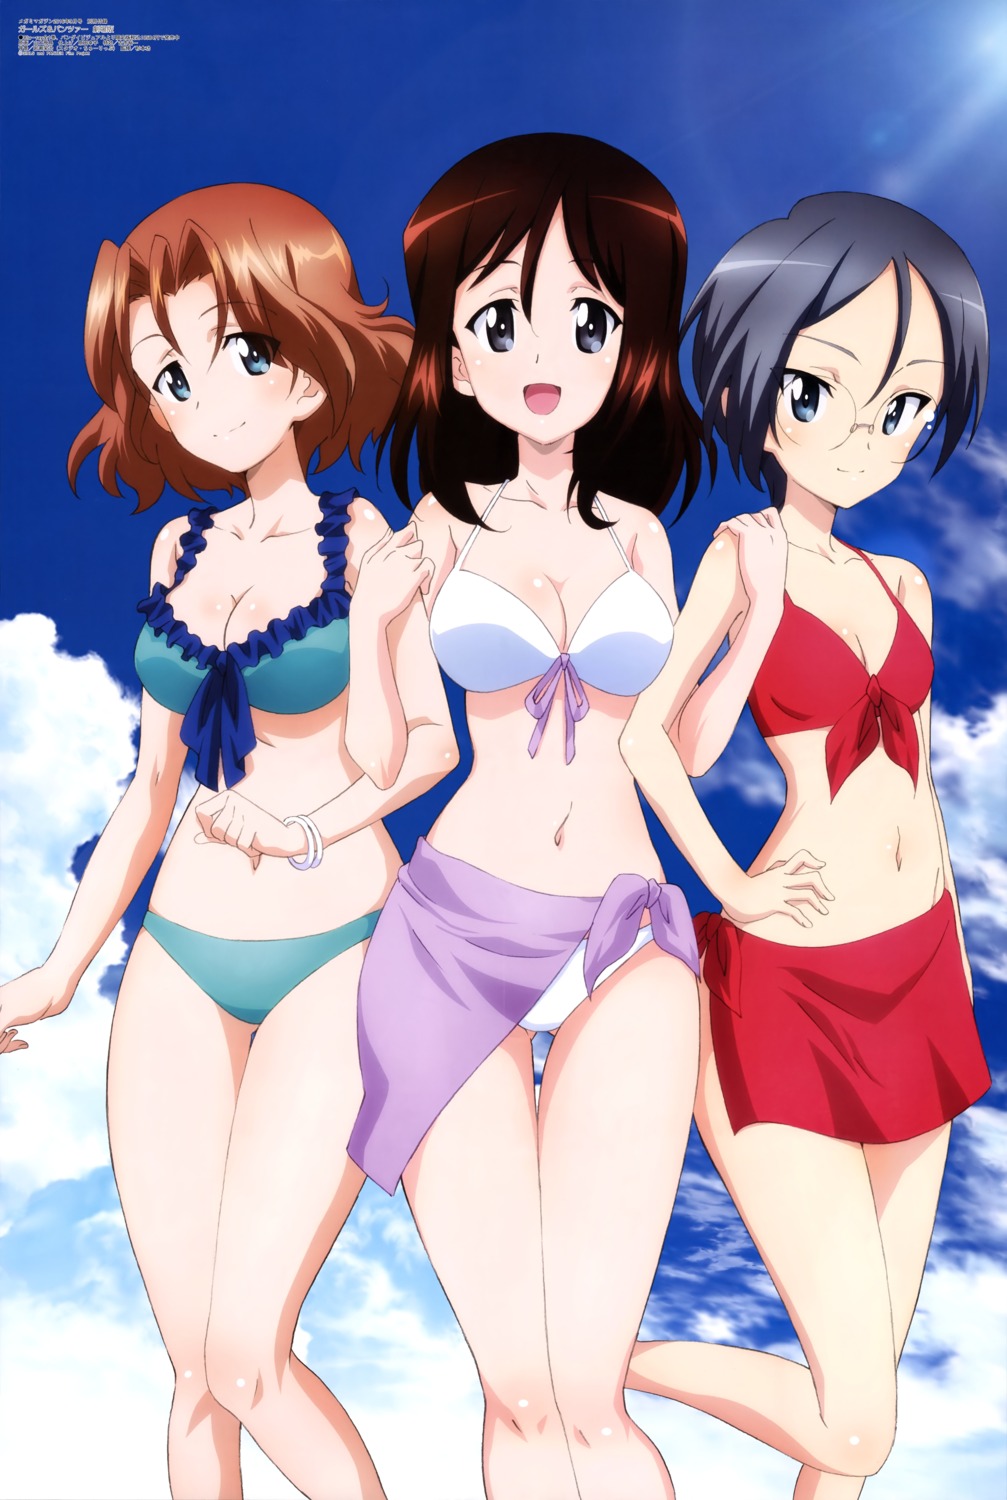 azumi_(girls_und_panzer) bikini cleavage girls_und_panzer megane megumi_(girls_und_panzer) rumi_(girls_und_panzer) swimsuits yamaguchi_asuka